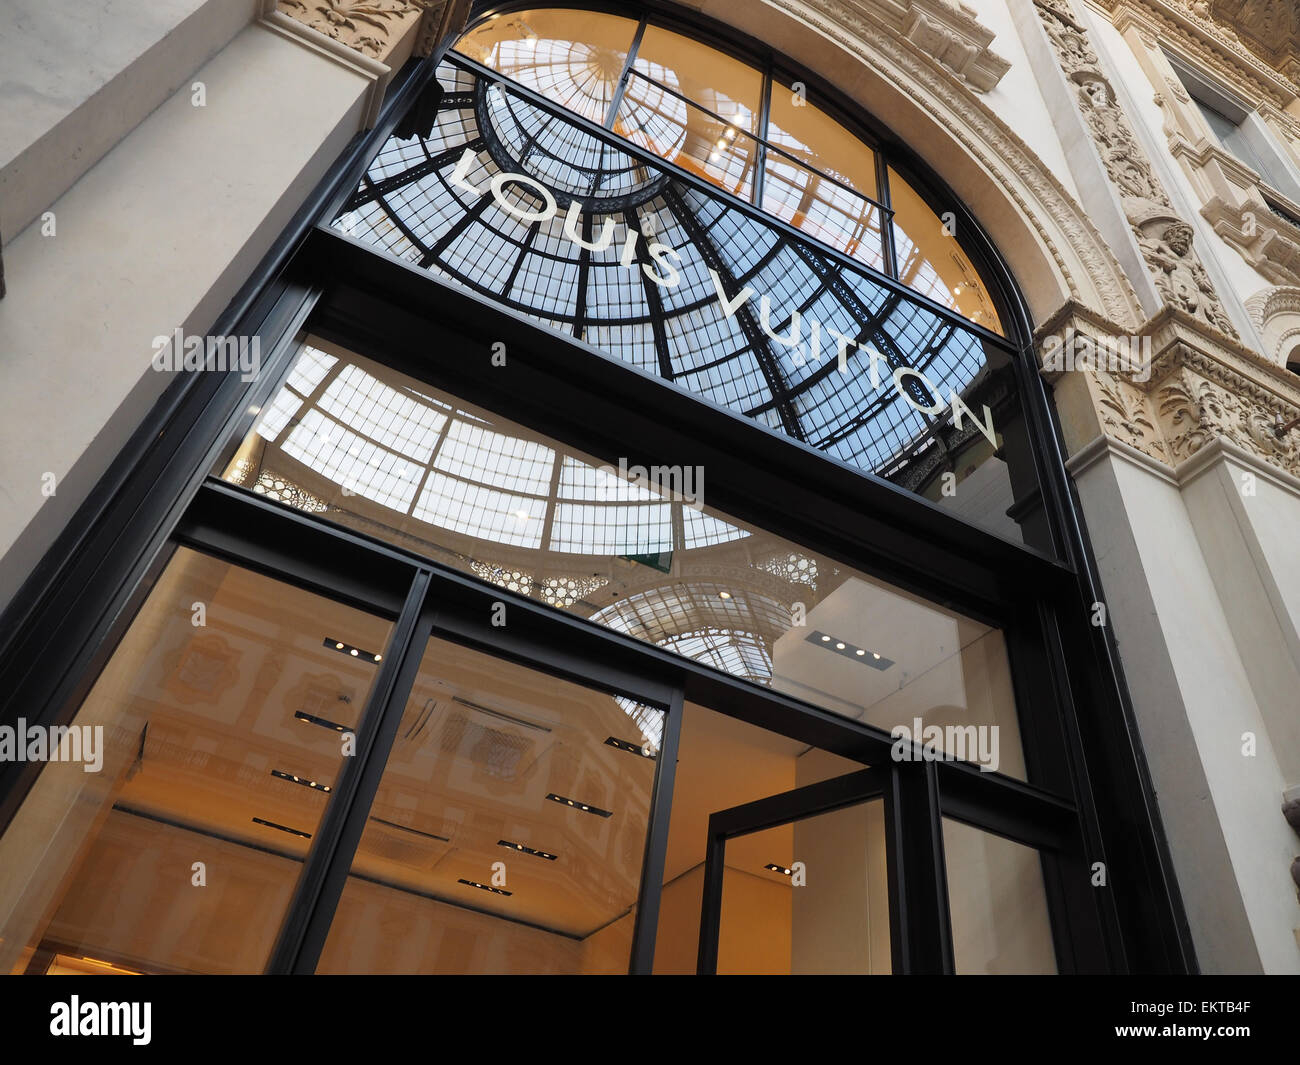 Louis Vuitton Store In Galleria Vittorio Emanuele Ii In Milan